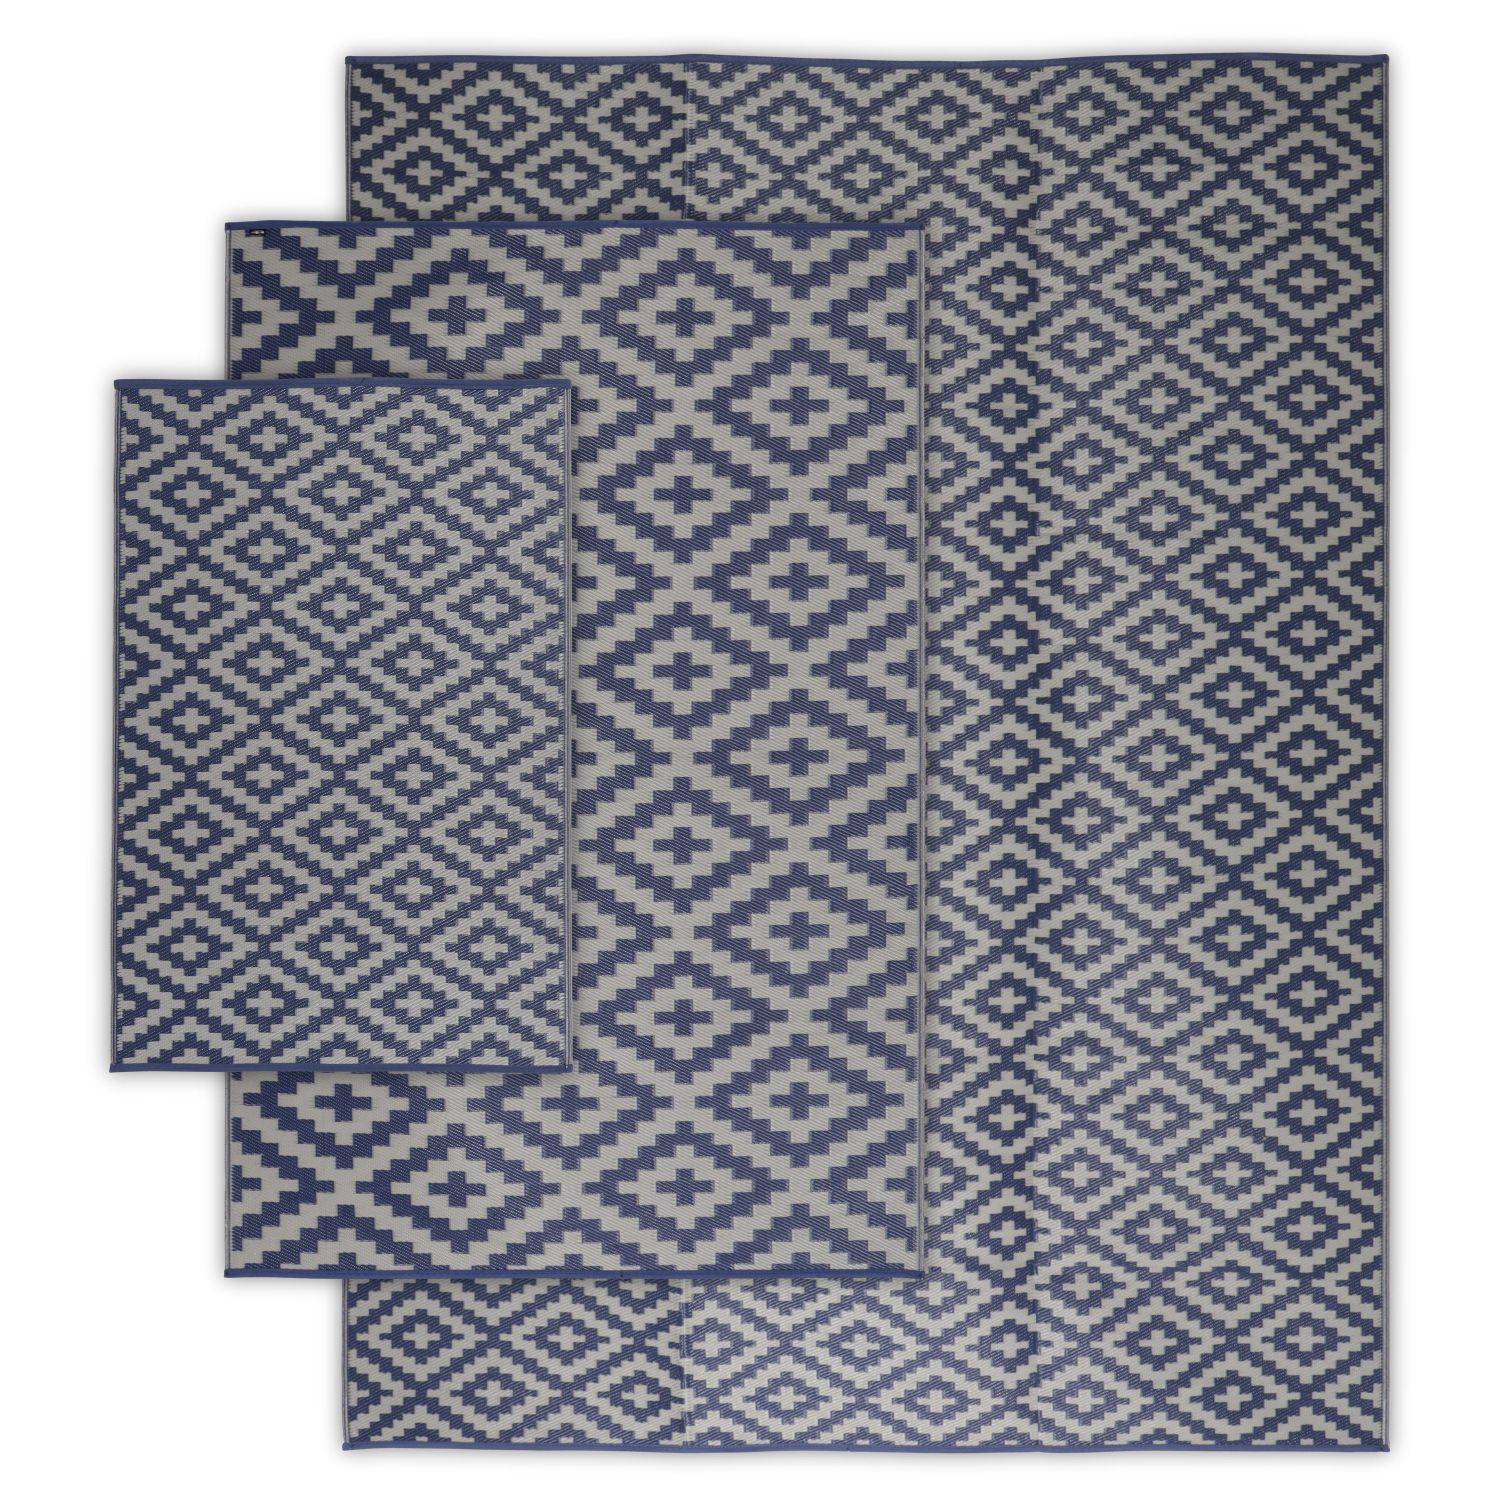 Tapis d’extérieur 270x360cm STOCKHOLM - Rectangulaire, motif losanges bleu / beige, jacquard, réversible, indoor / outdoor, Photo5